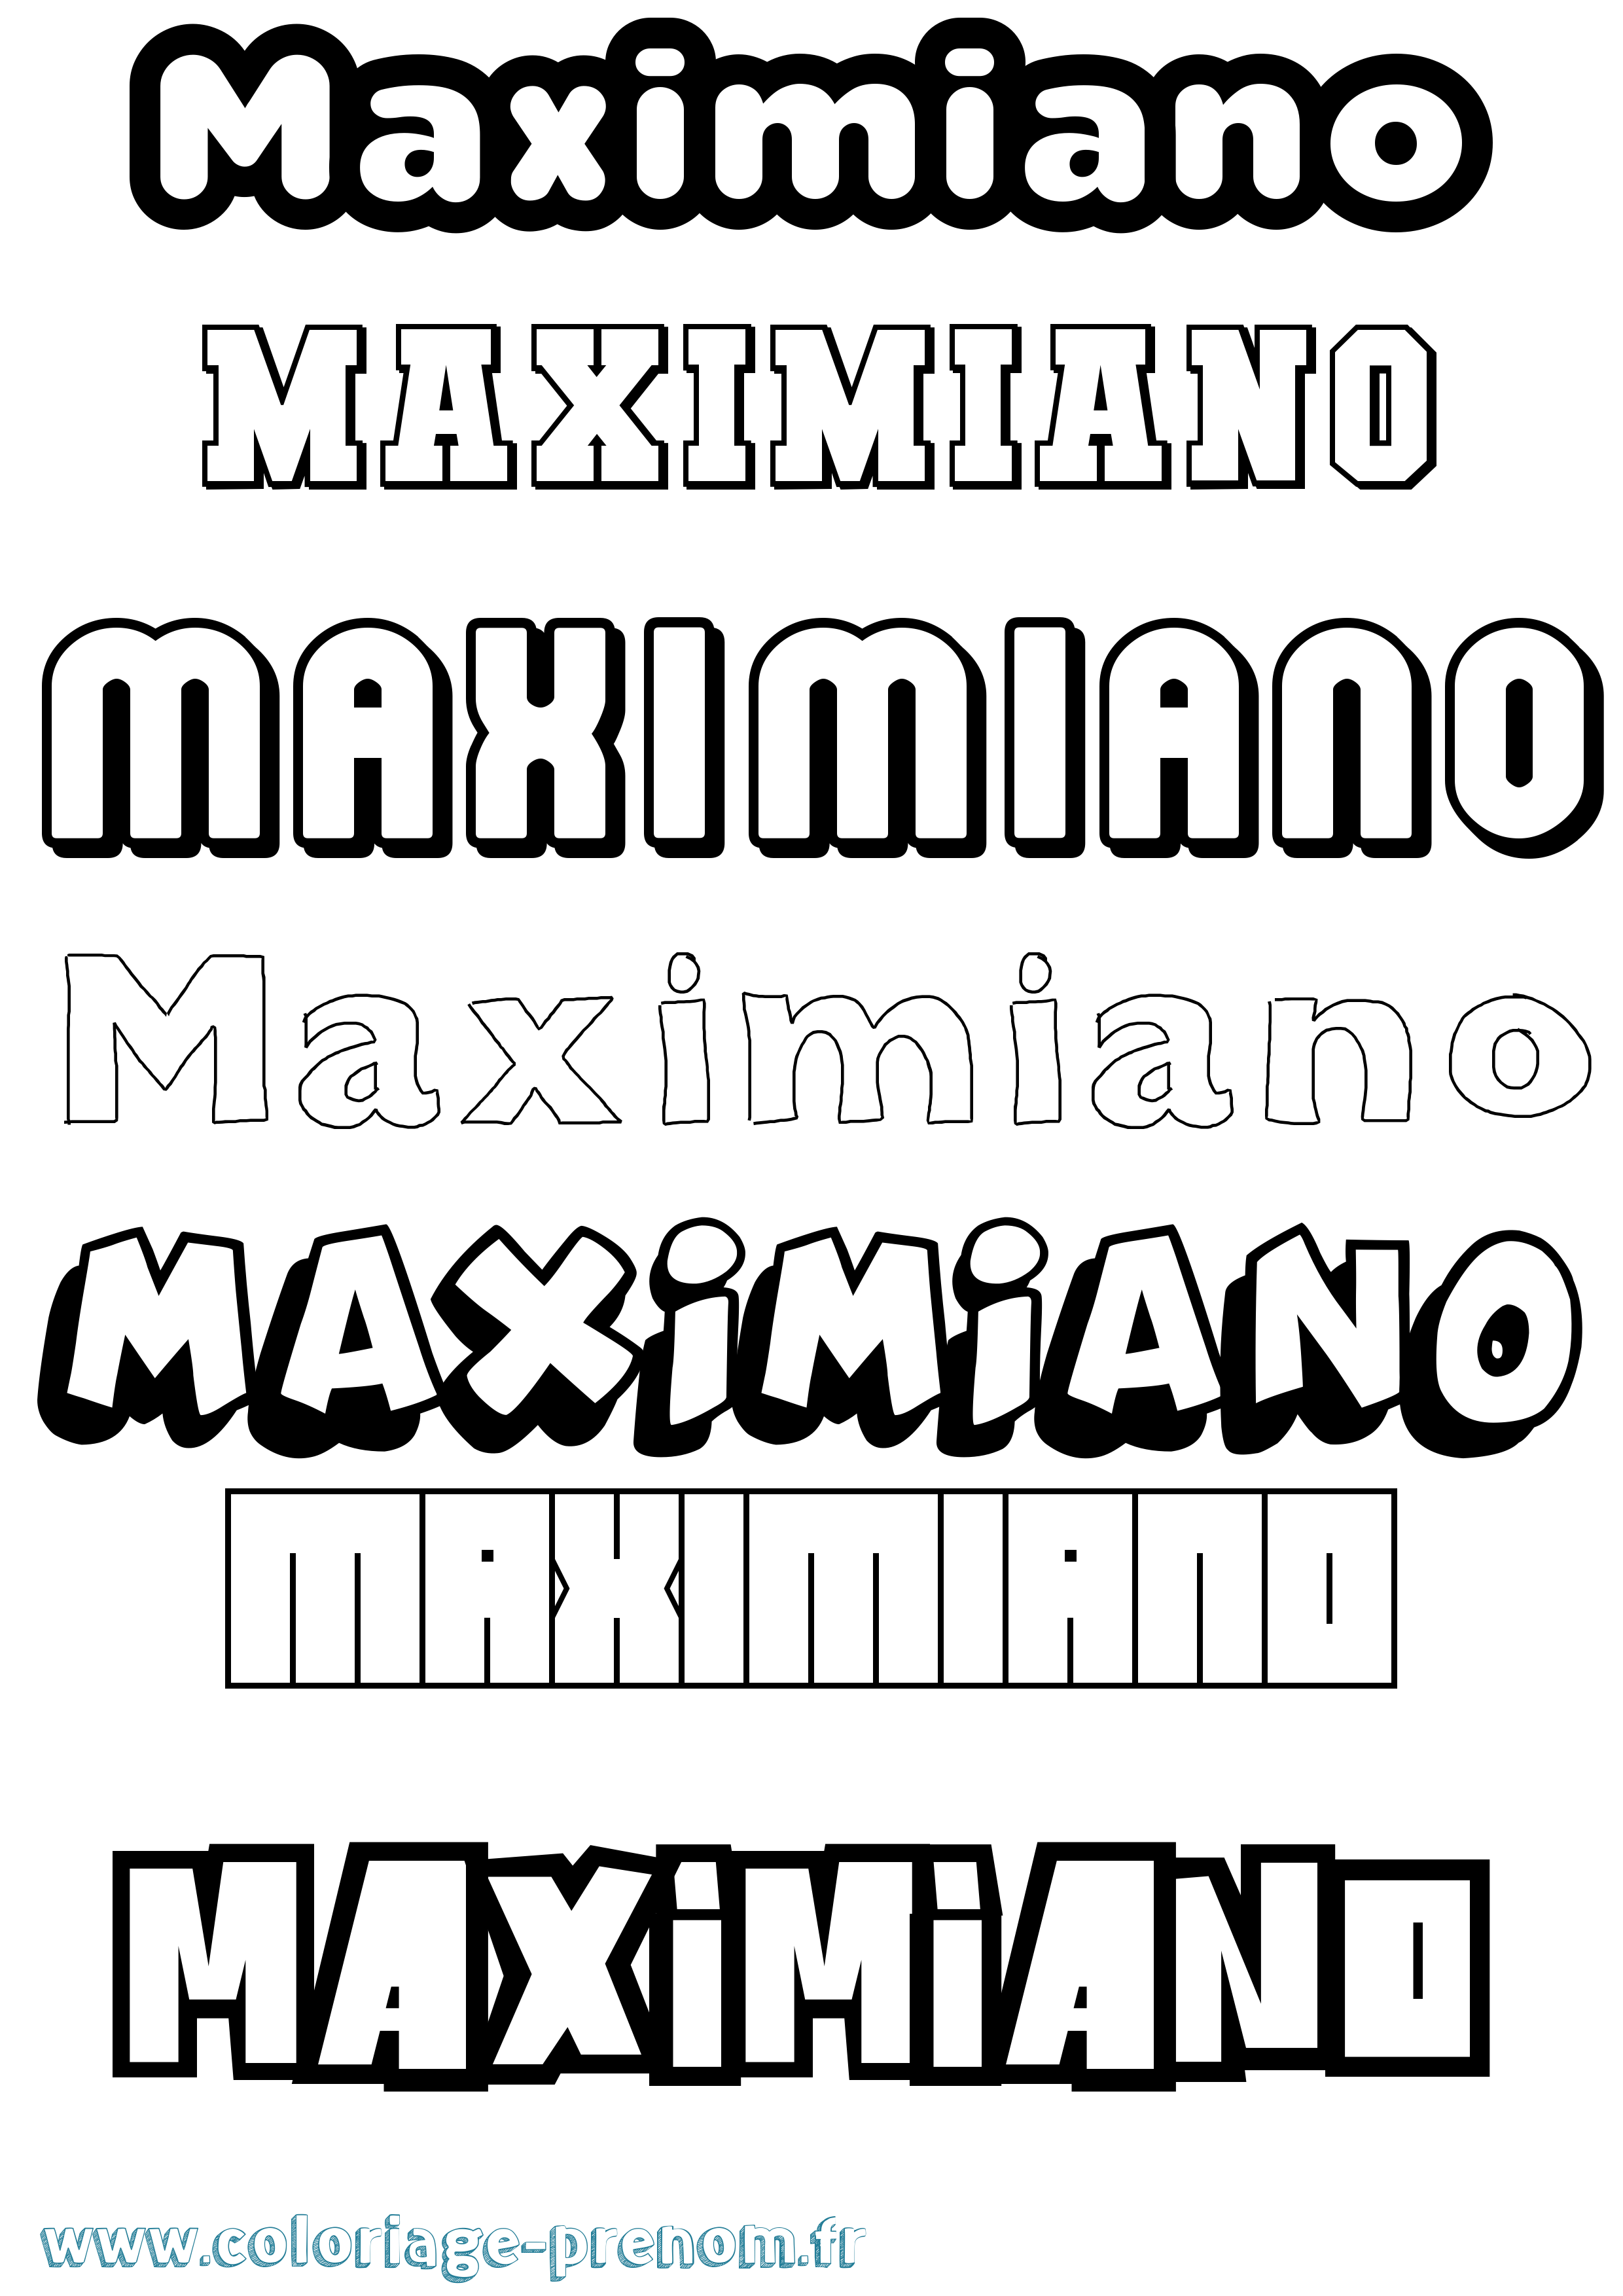 Coloriage prénom Maximiano Simple